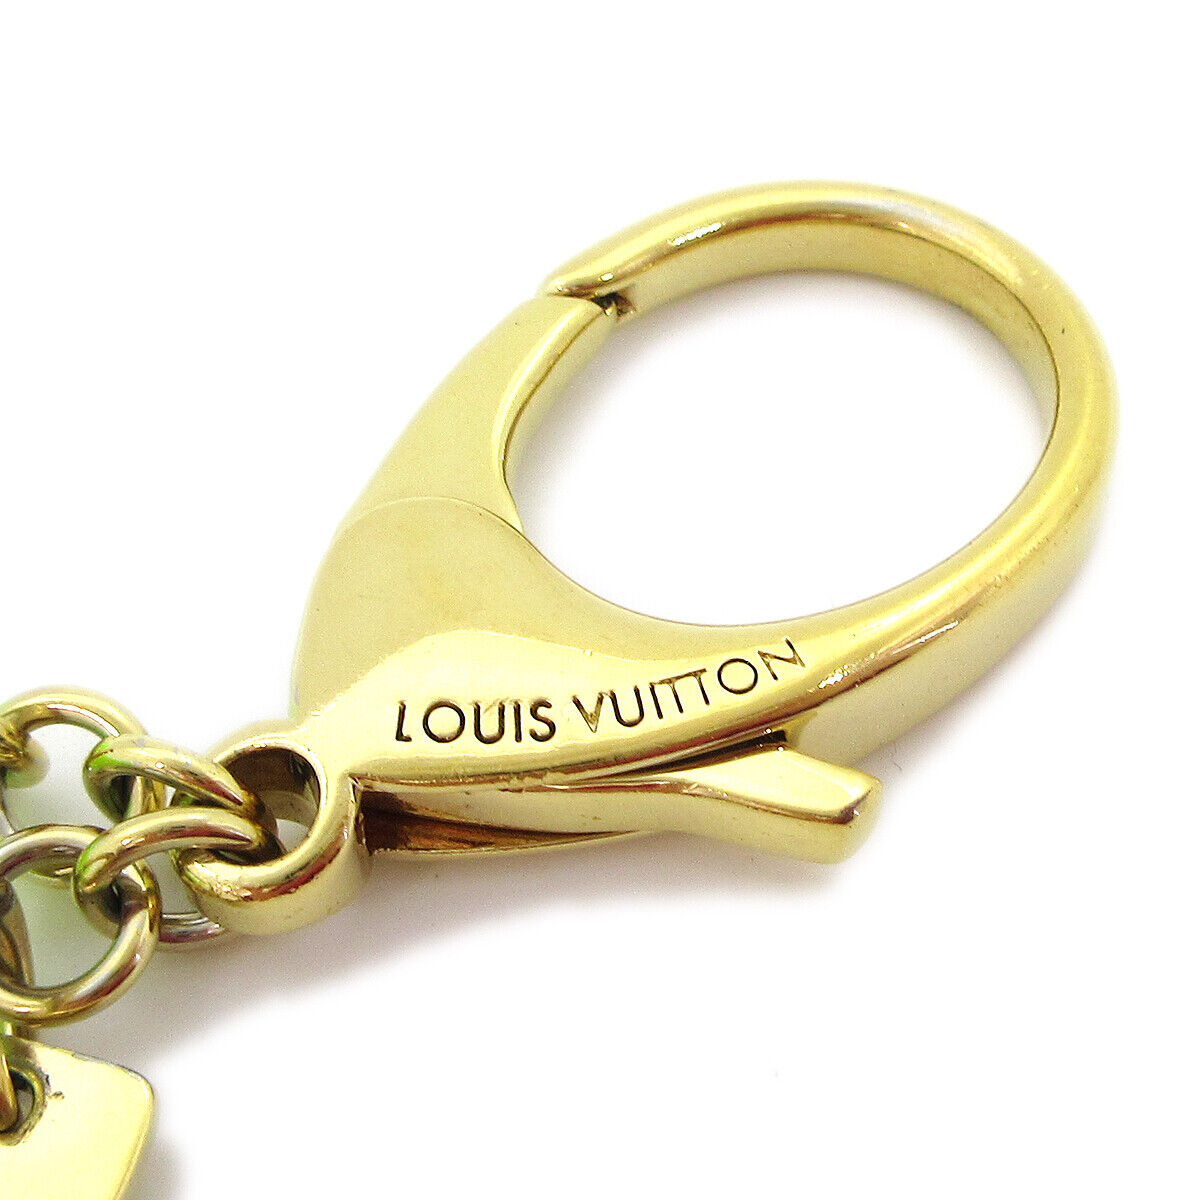 LOUIS VUITTON Anneau Cles Mousqueton XL Bag Charm Key Chain Ring M65769  05MY956